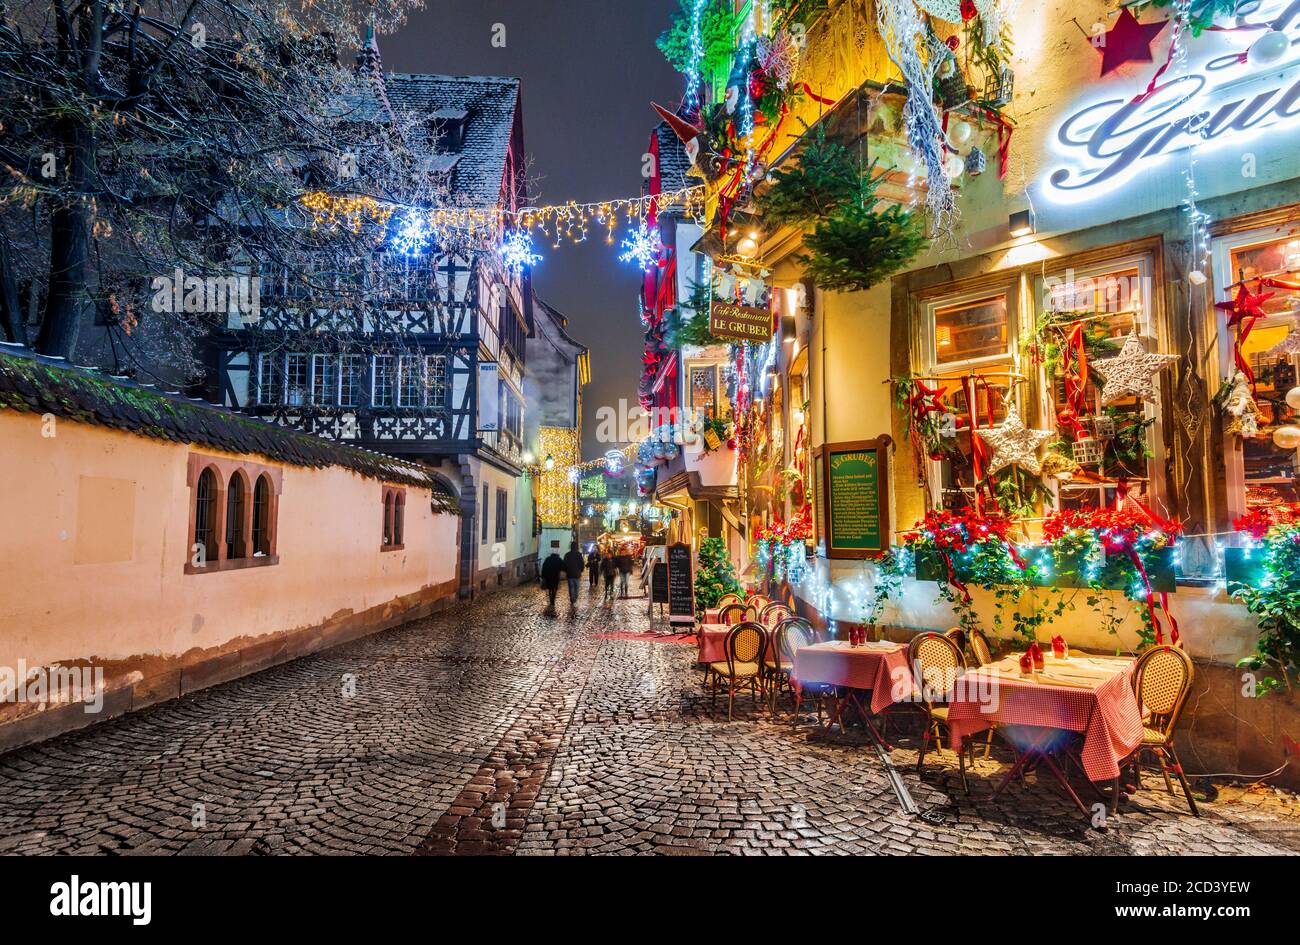 Straßburg, Frankreich - Dezember 2017: Straßendekoration im Zentrum von Straßburg im Restaurant Le Gruber während des Weihnachtsmarktes im Elsass. Stockfoto